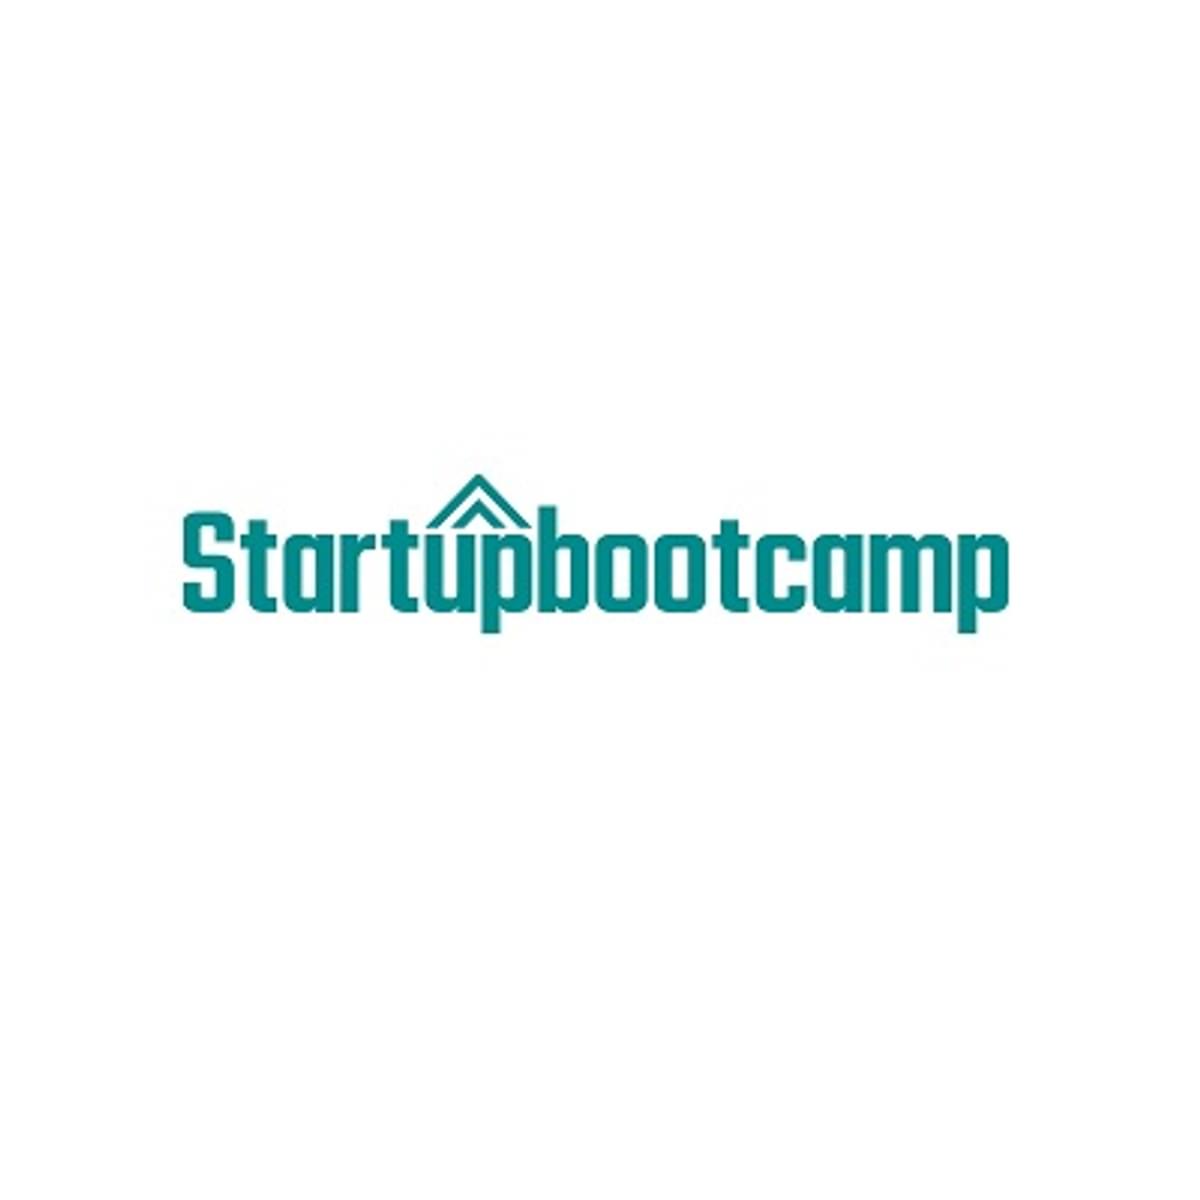 Startupbootcamp op zoek naar beste impact startups image